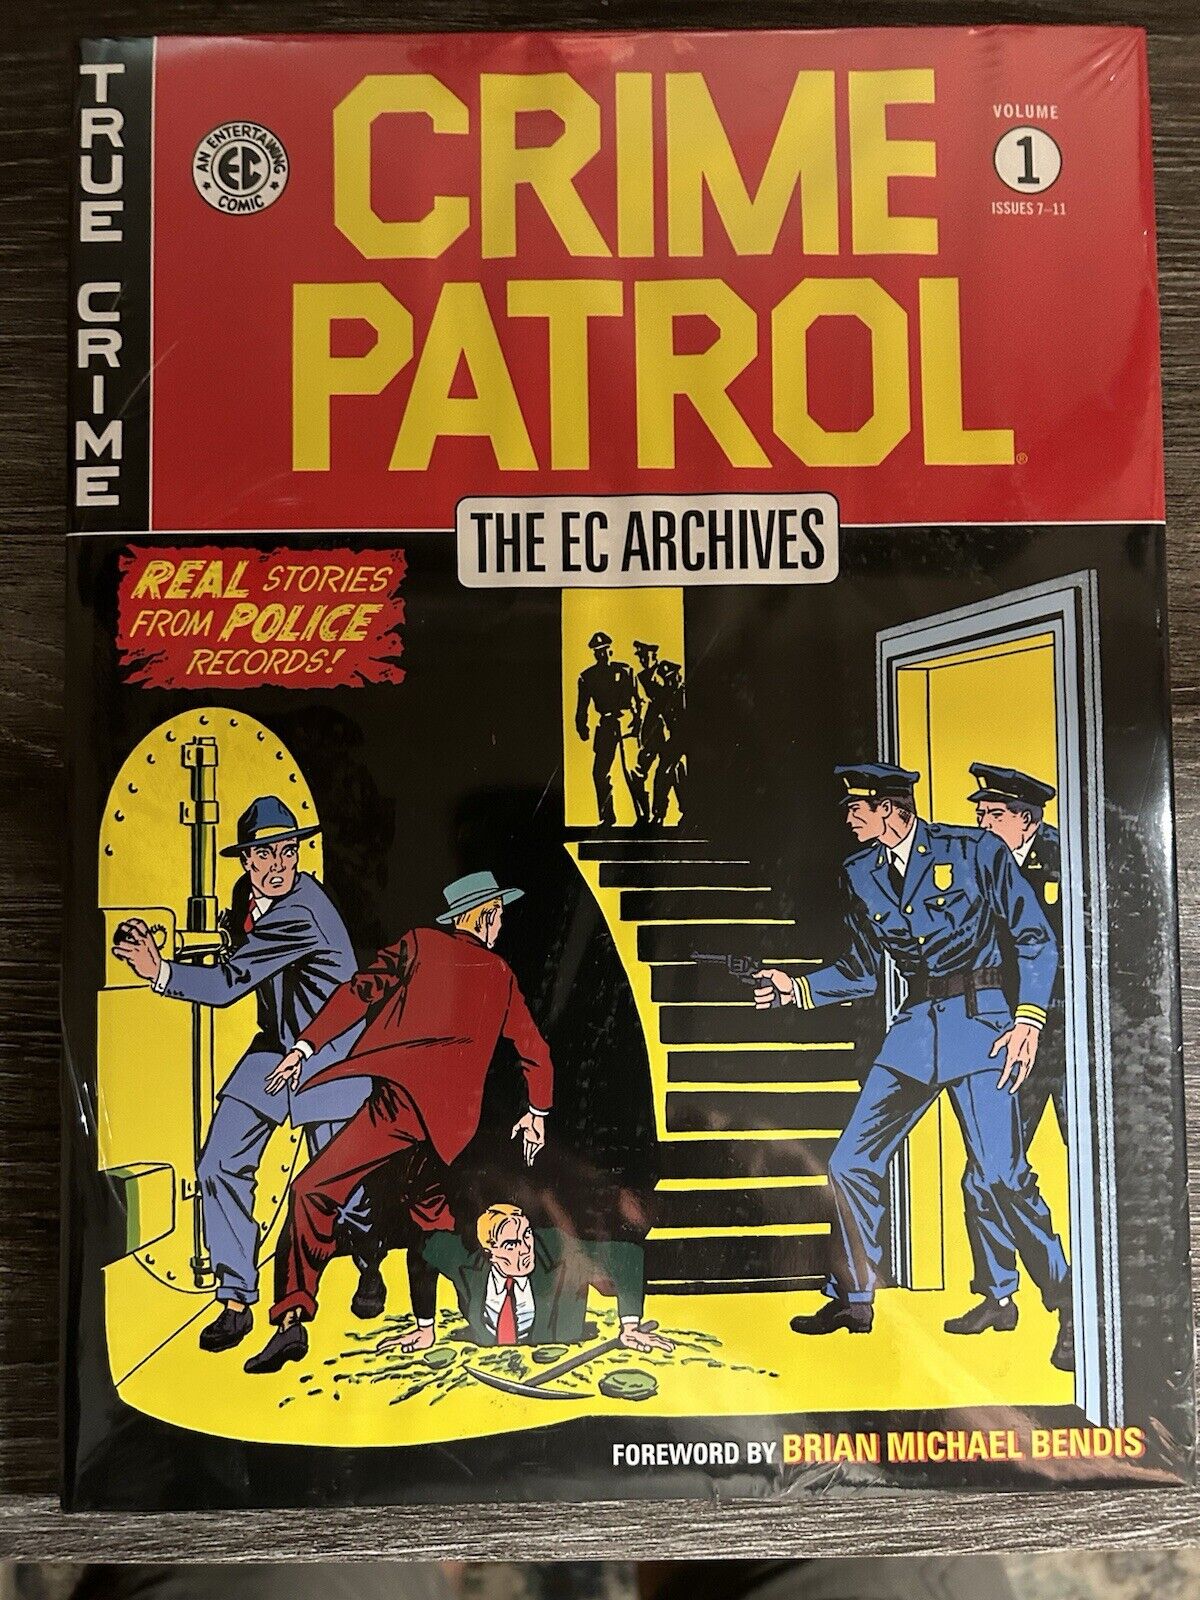 The Ec Archives: Crime Patrol #1 (Dark Horse Comics)